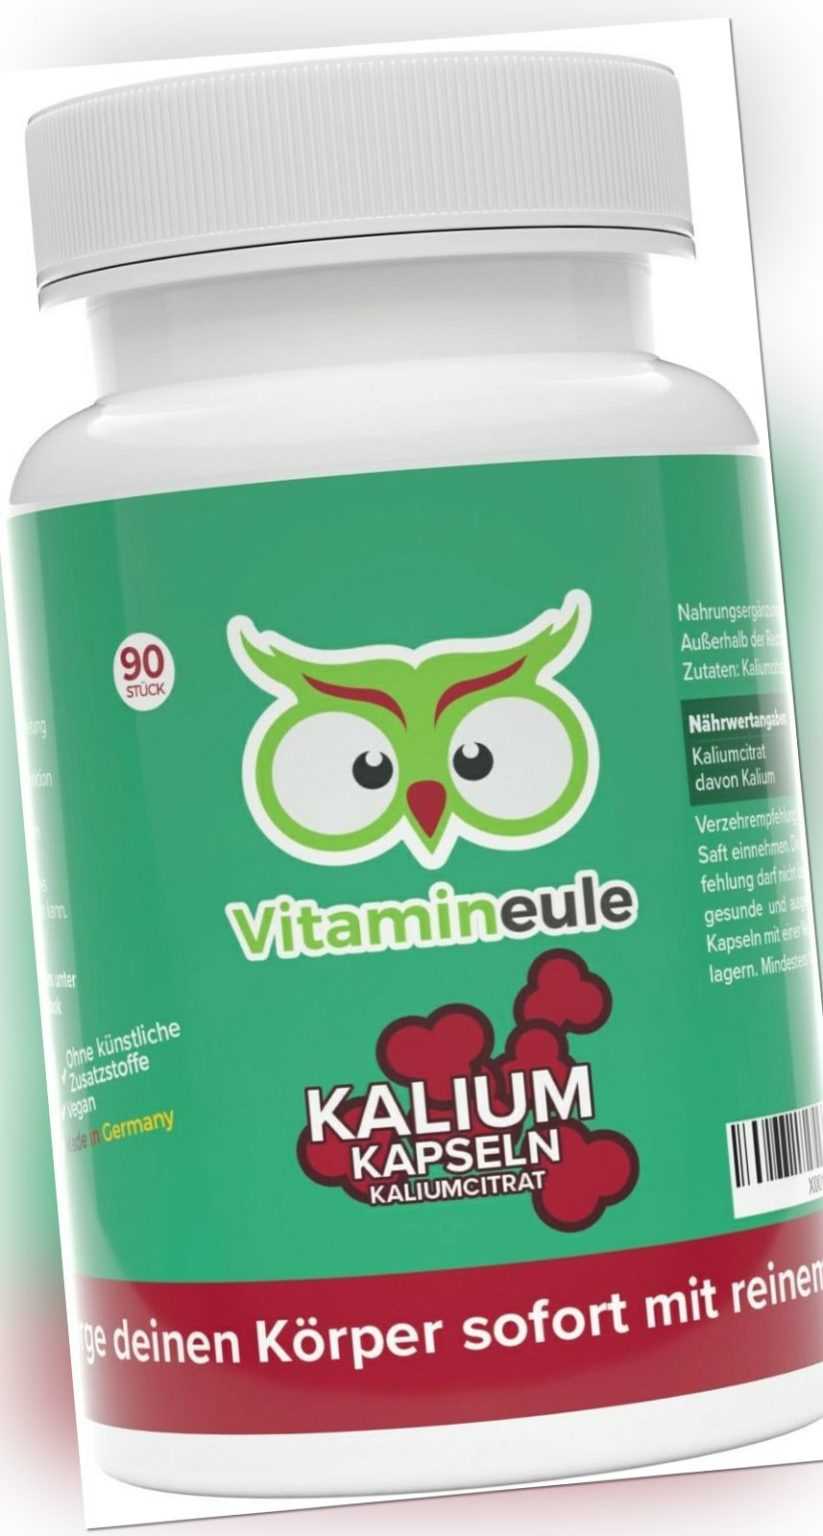 Kalium Kapseln - Kaliumcitrat - 200mg Kalium - deutsche Qualität - Vitamineule